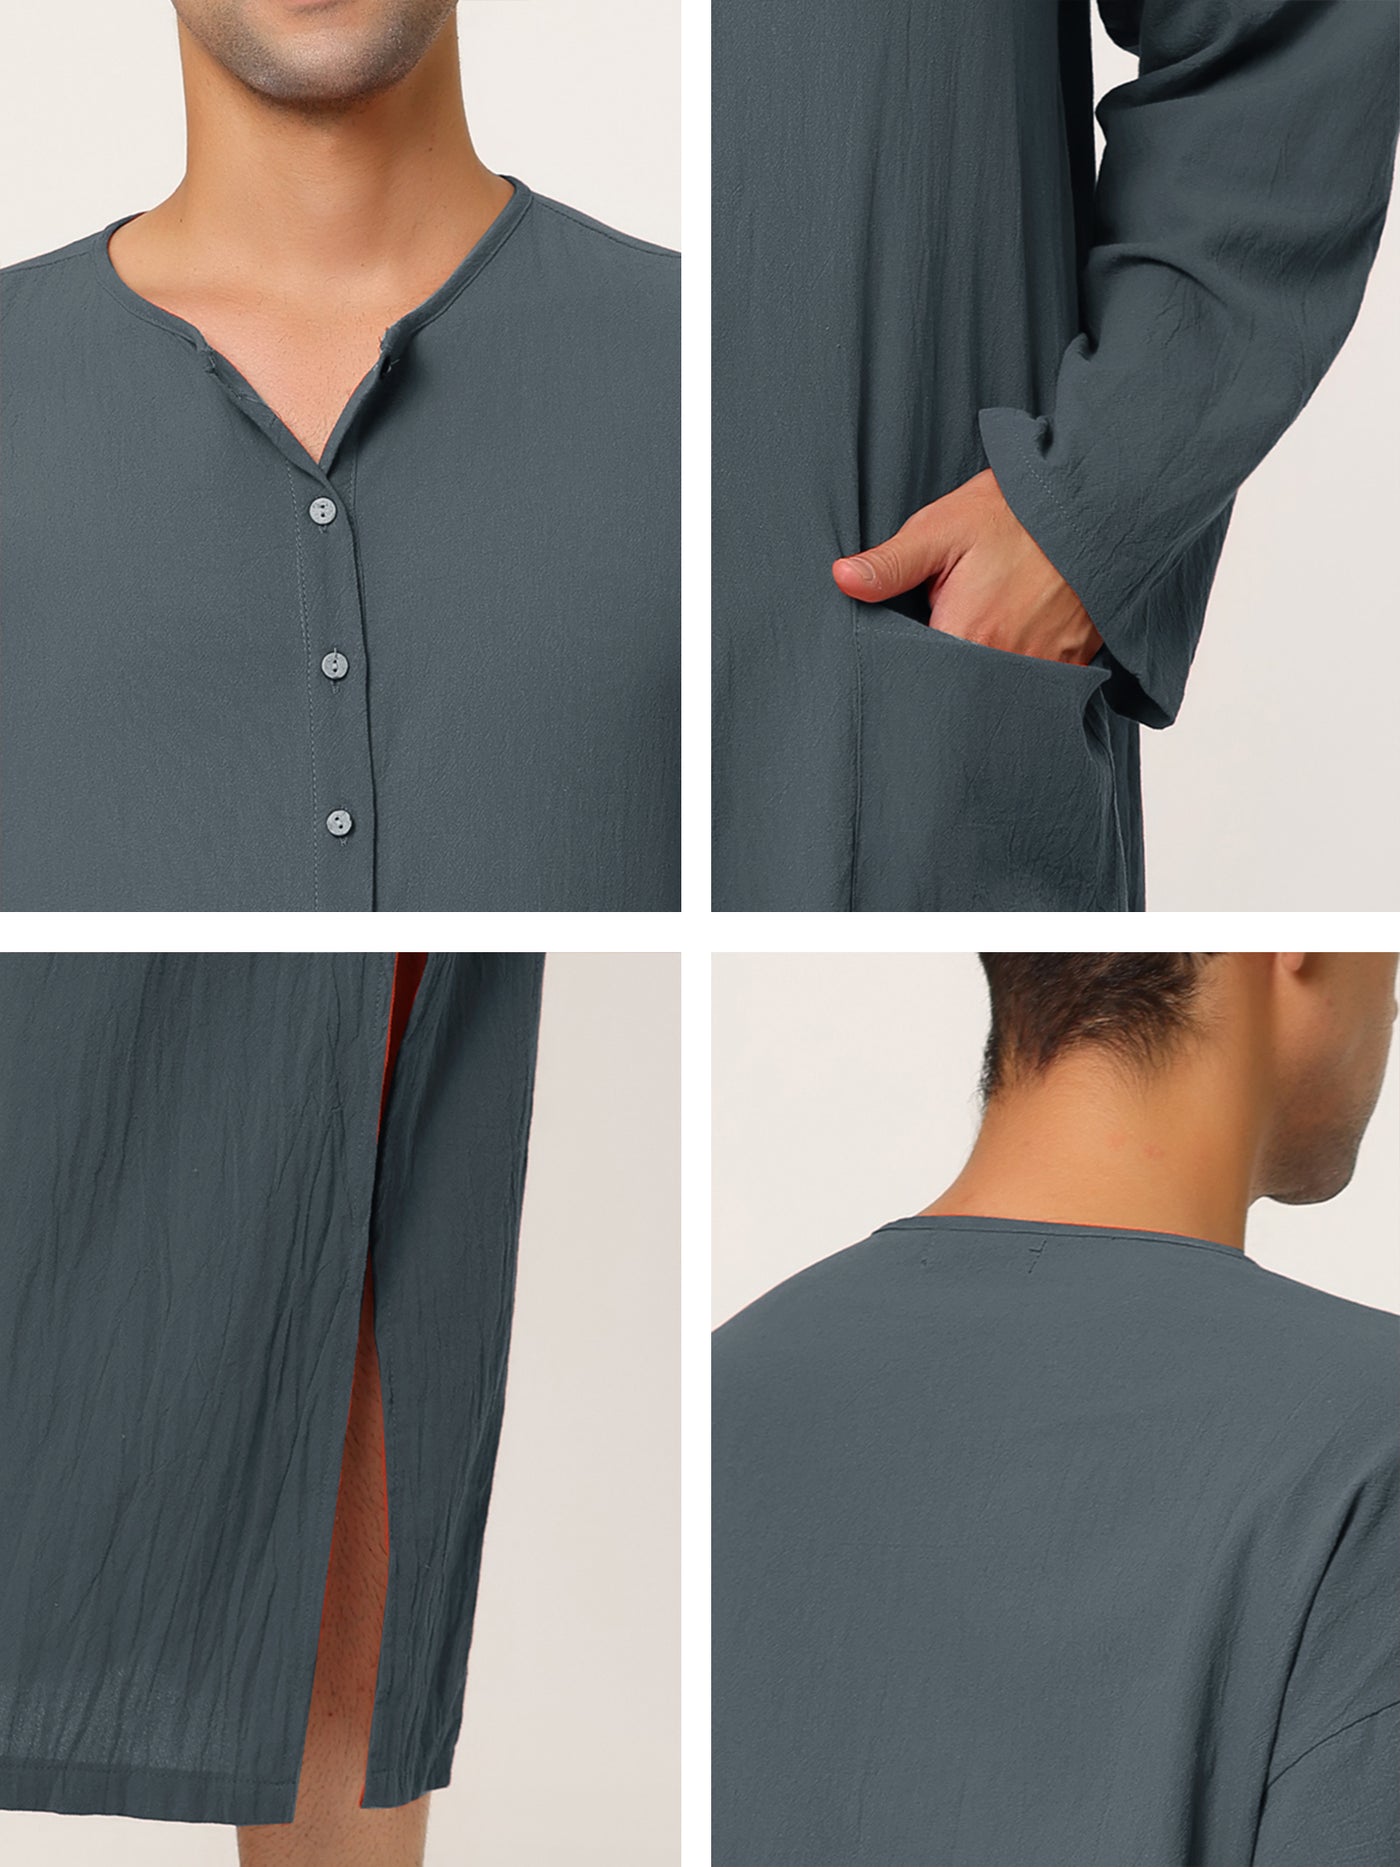 Bublédon Cotton Solid Color Sleep Shirt Side Split Long Gown